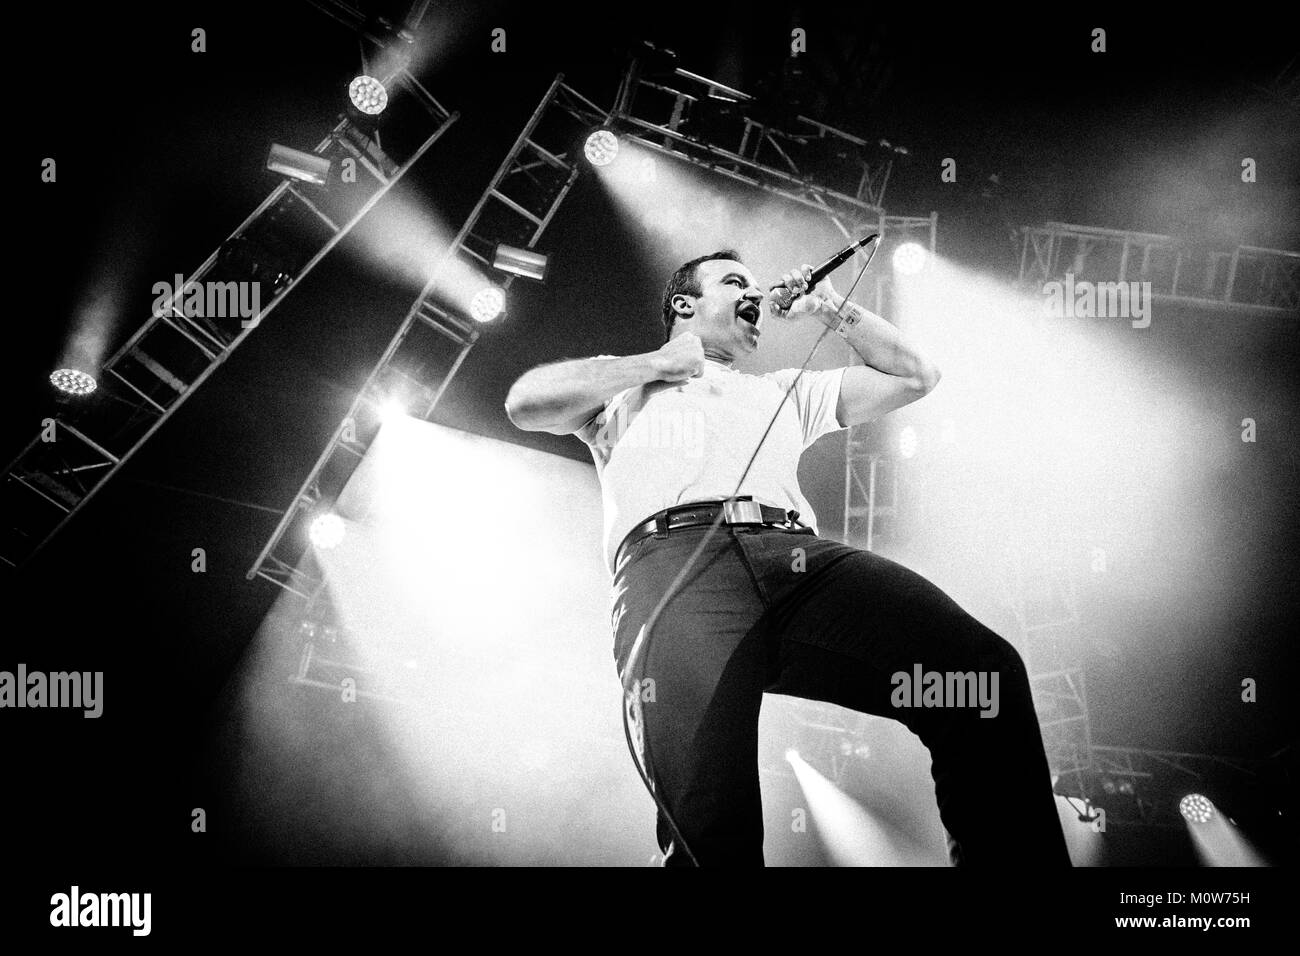 L'American synthpop band Îles futures effectue un concert live à l'Avalon étape à Roskilde Festival 2014. Ici chanteur Samuel T. Le hareng est représenté sur scène. Danemark 04.07.2014. Banque D'Images